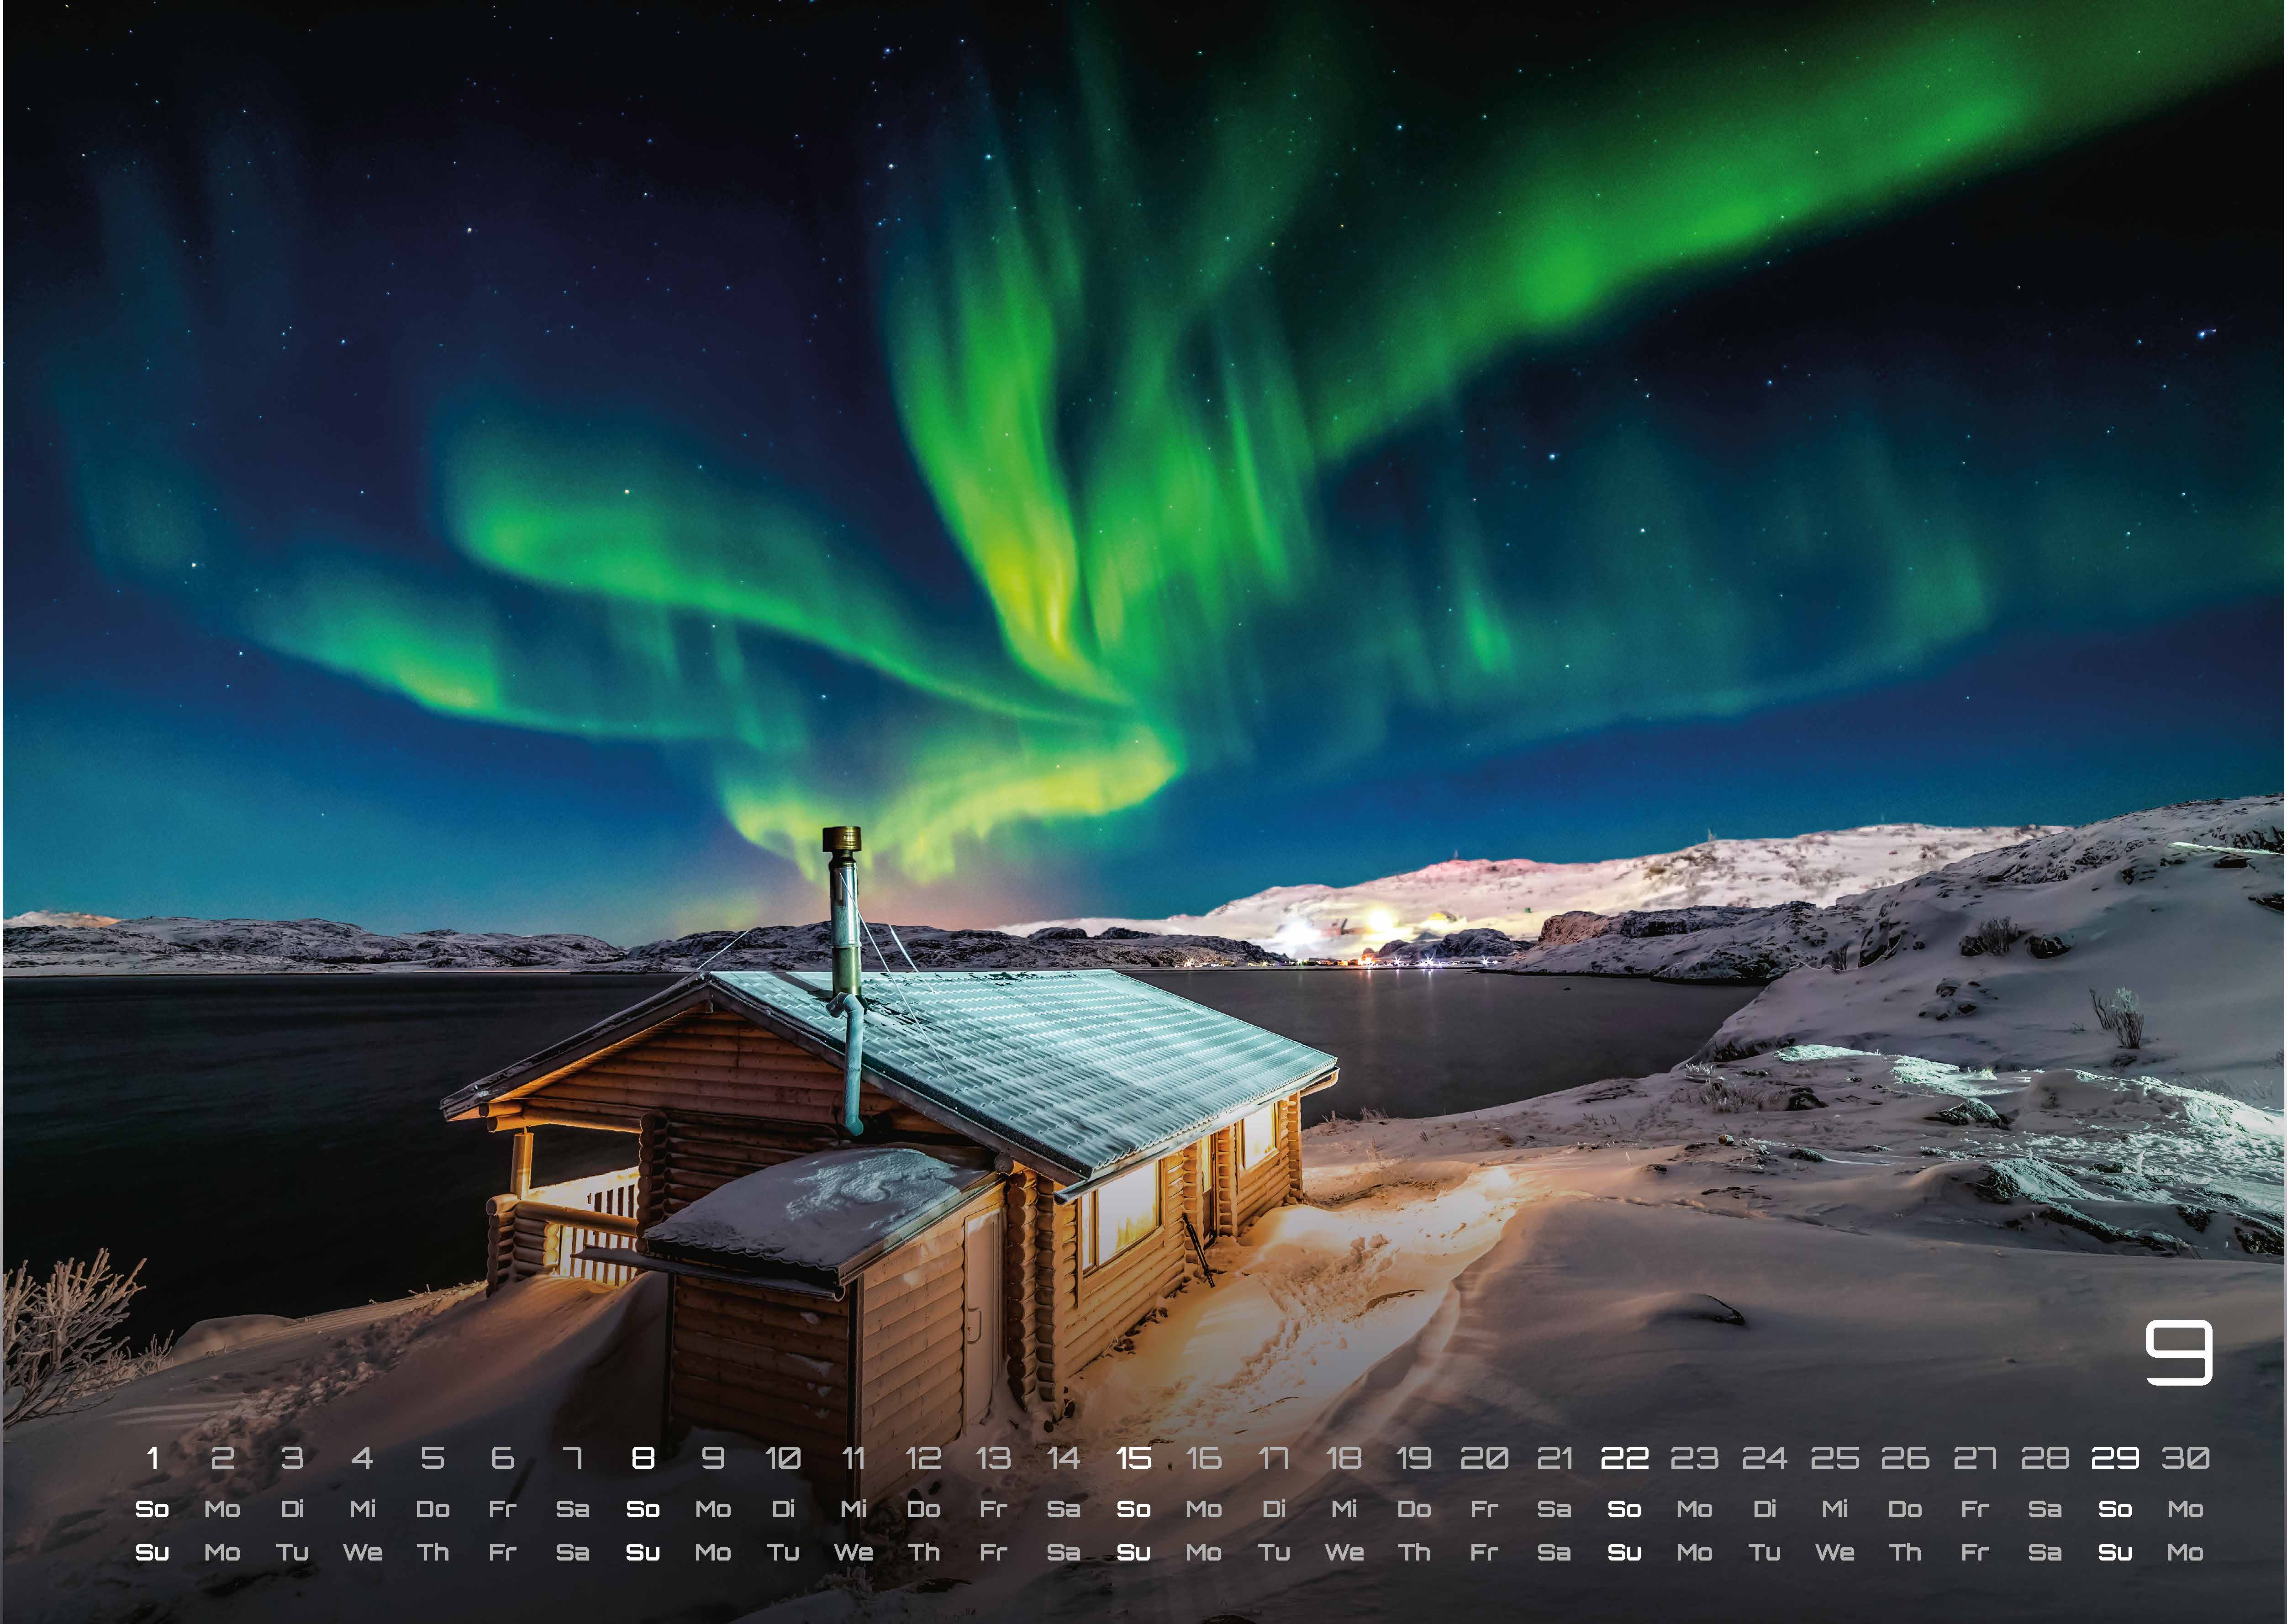 Polarlichter - grandiose Naturschauspiele - 2024 - Kalender